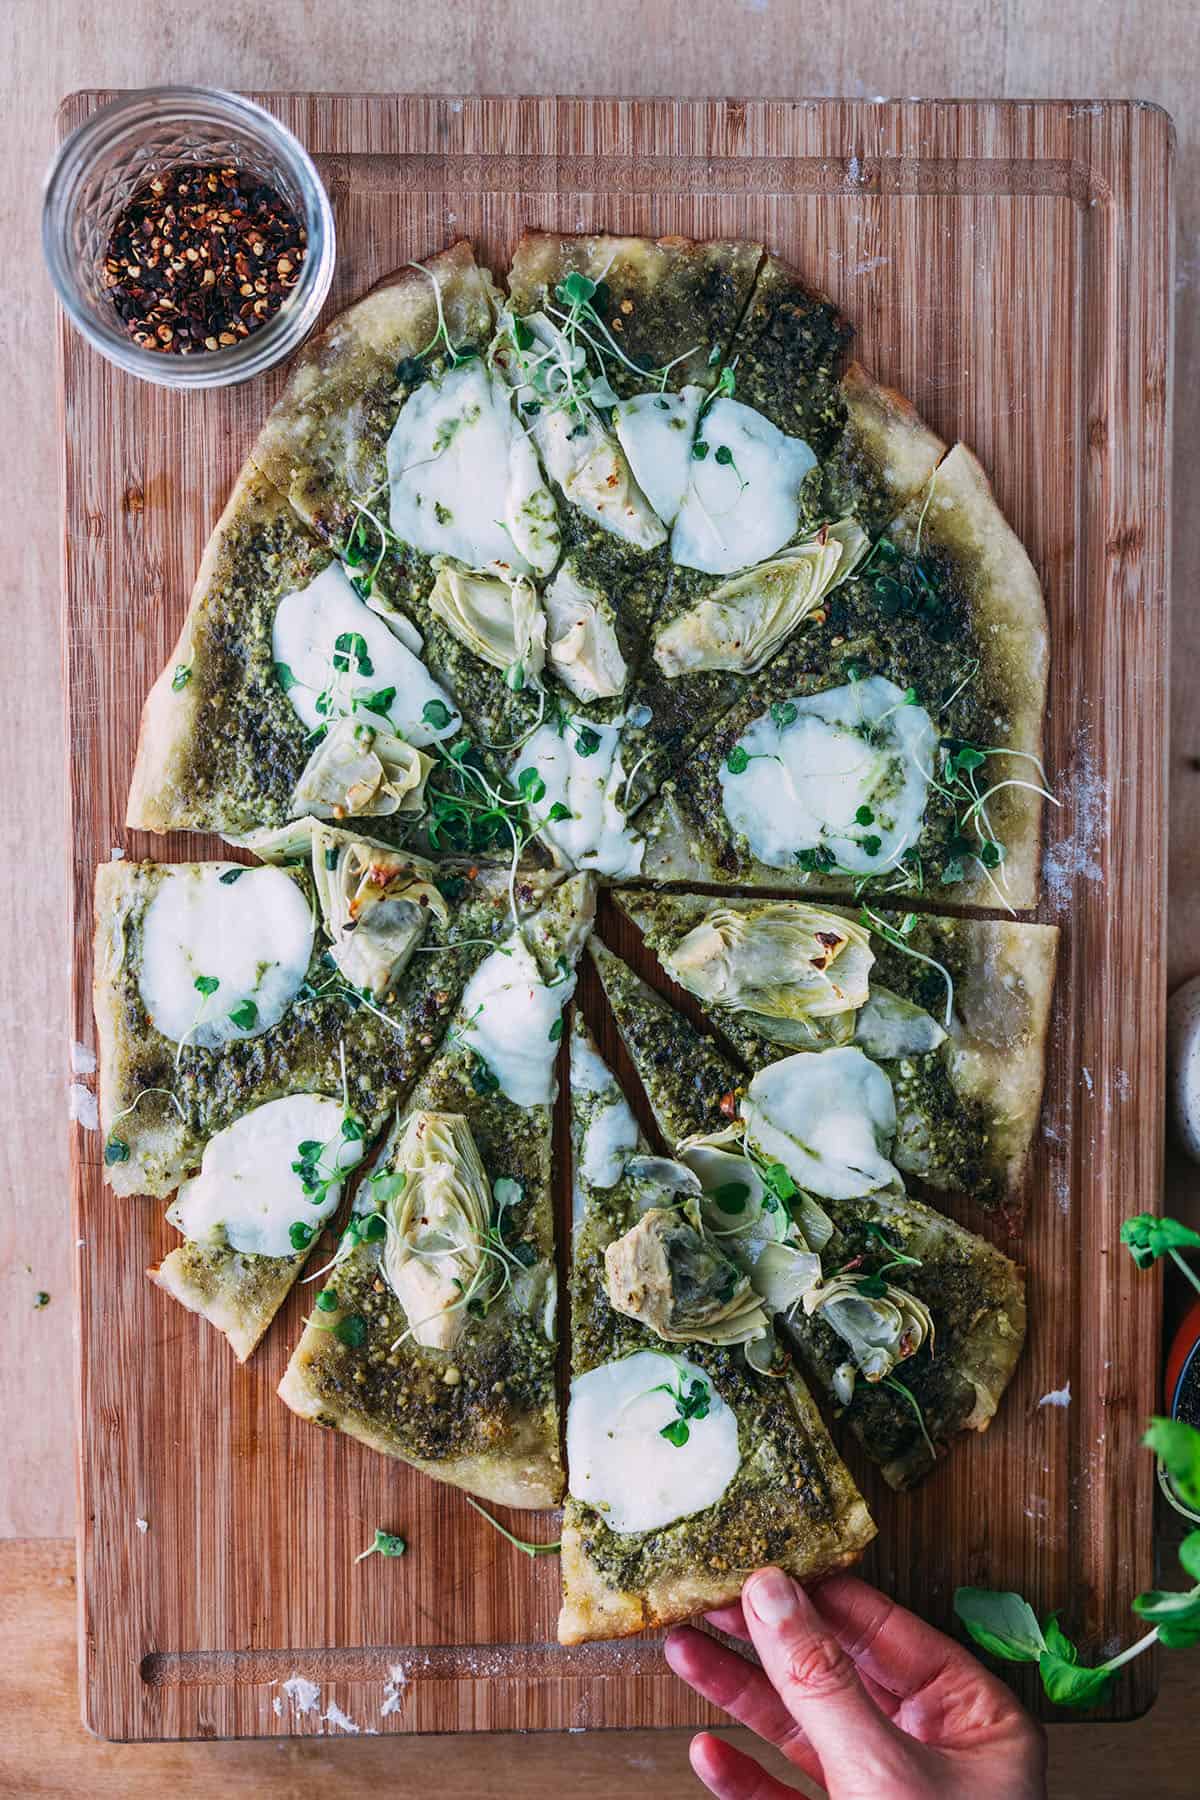 A sourdough pizza with pesto, artichoke hearts, and mozzarella sliced on a wood cutting board.  